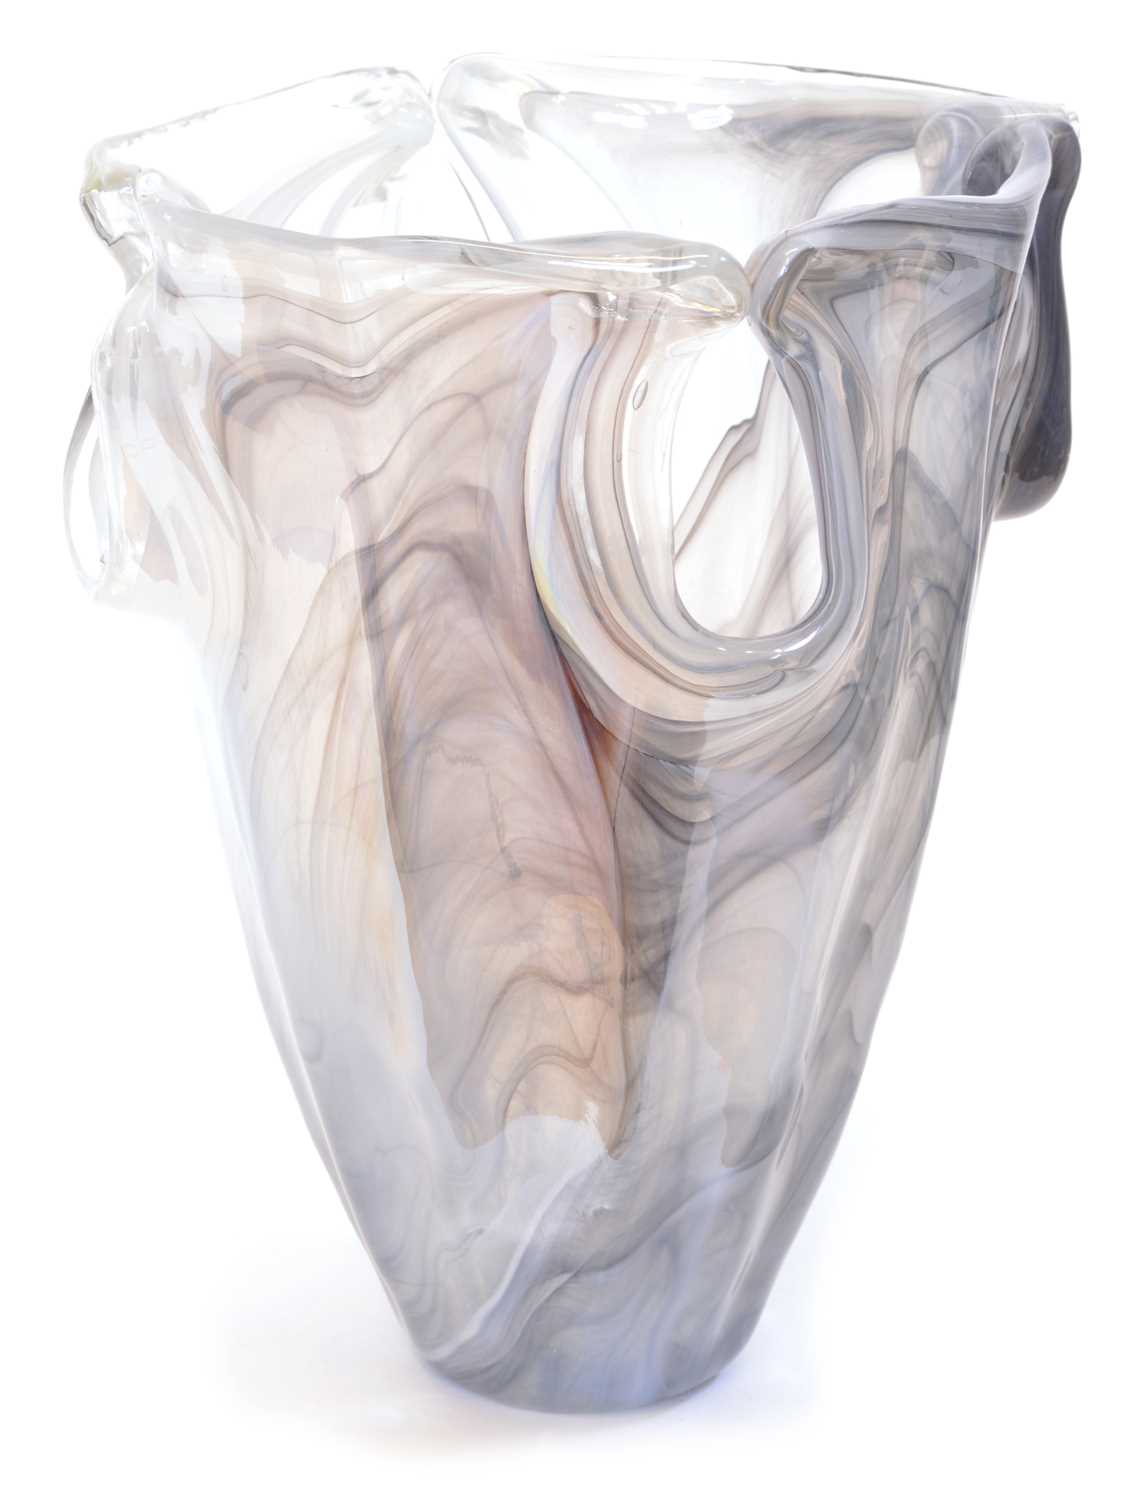 Lot 8 - Glass Vase by 'Lavorazione Arte Murano'